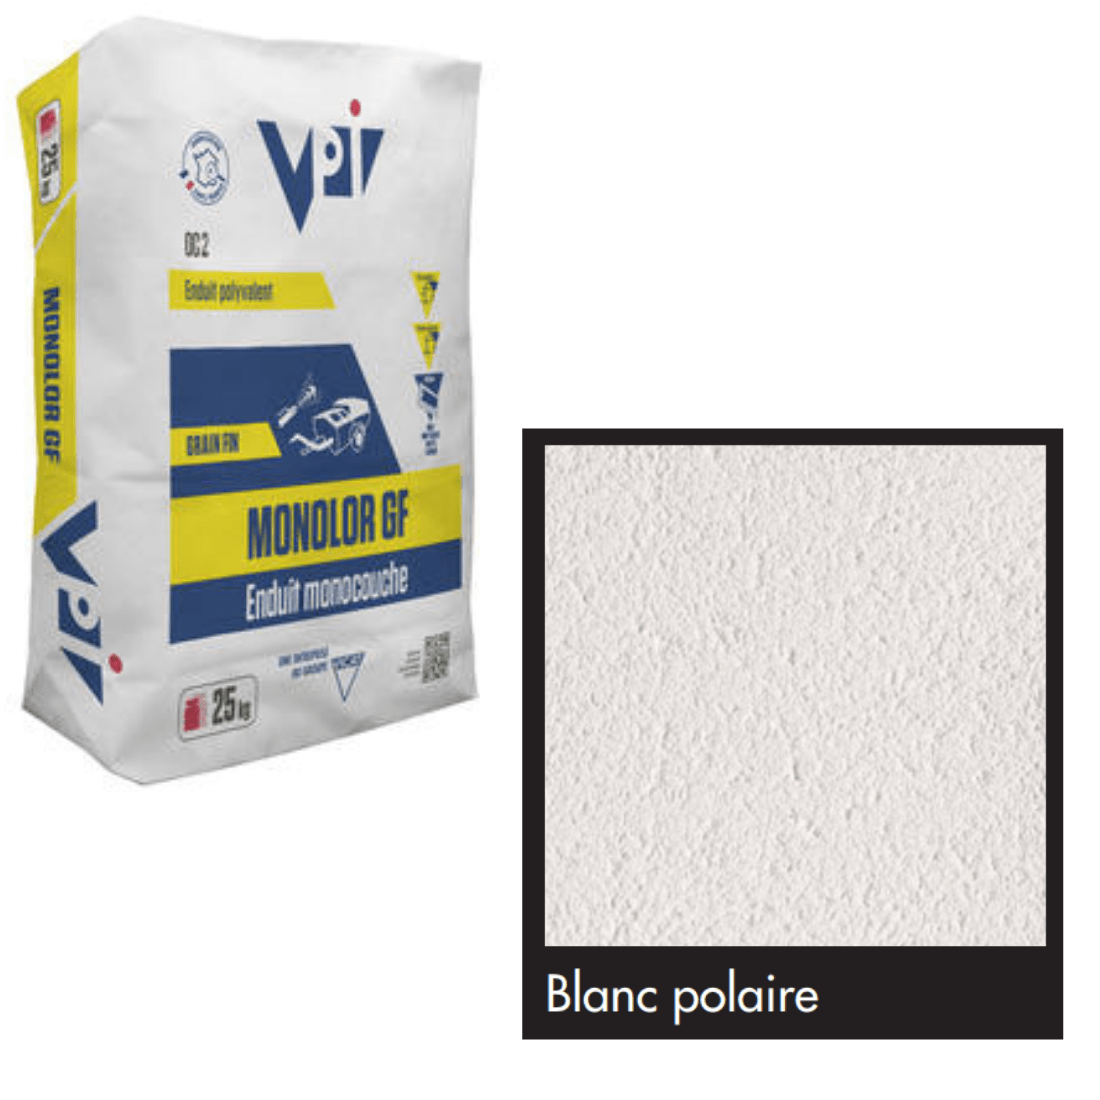 VPI Monocal GM Blanc Polaire Render 25kg - Builders Merchant Direct